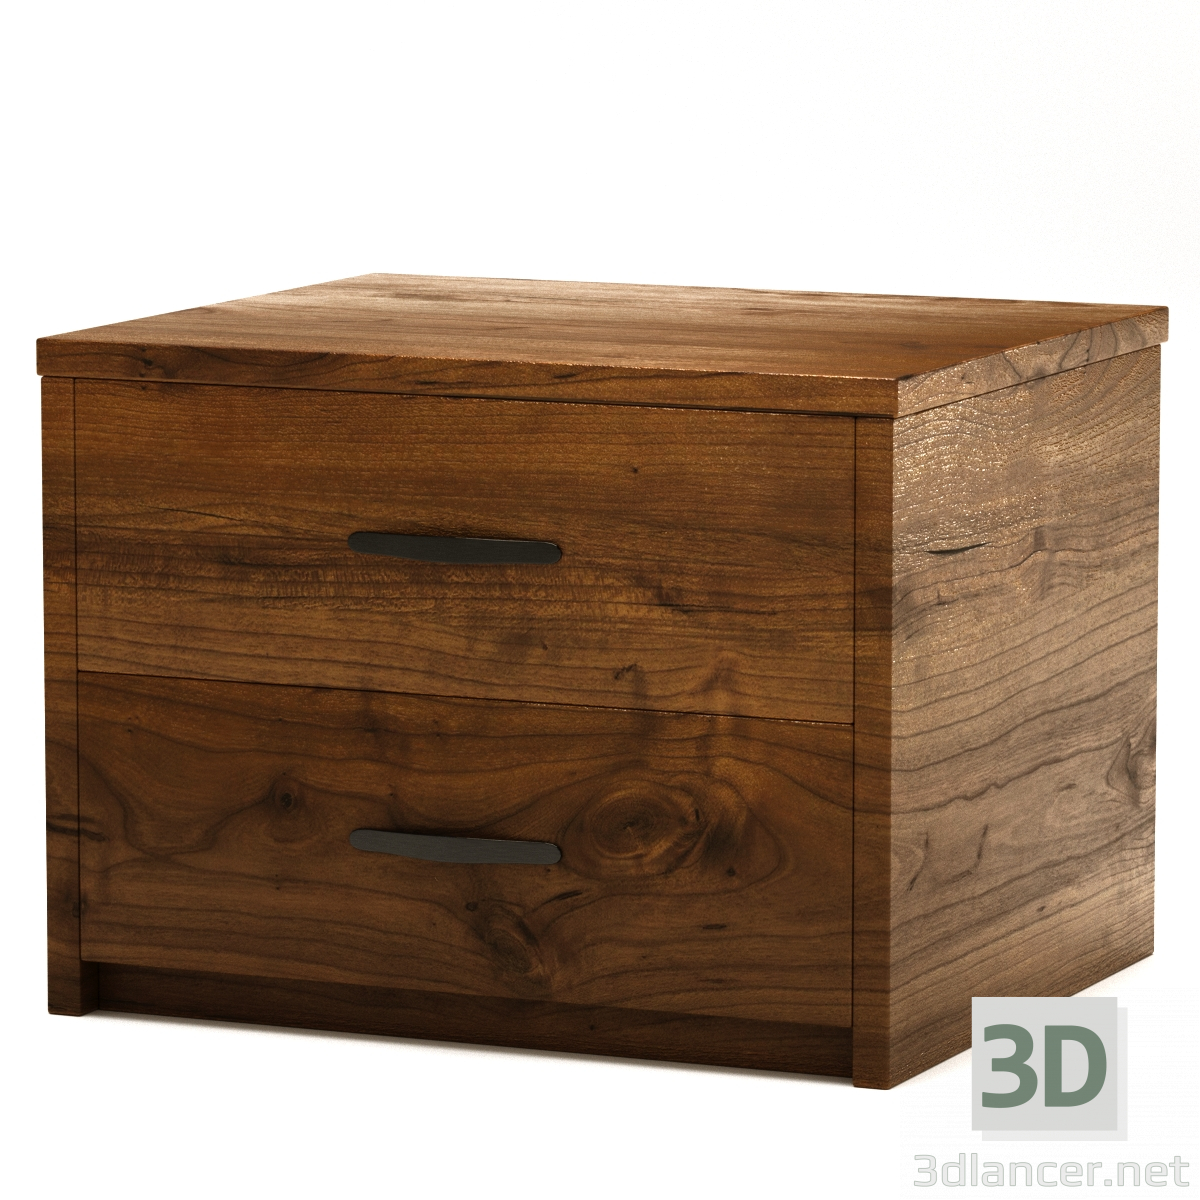 3 डी लकड़ी की बेडसाइड टेबल मॉडल खरीद - रेंडर